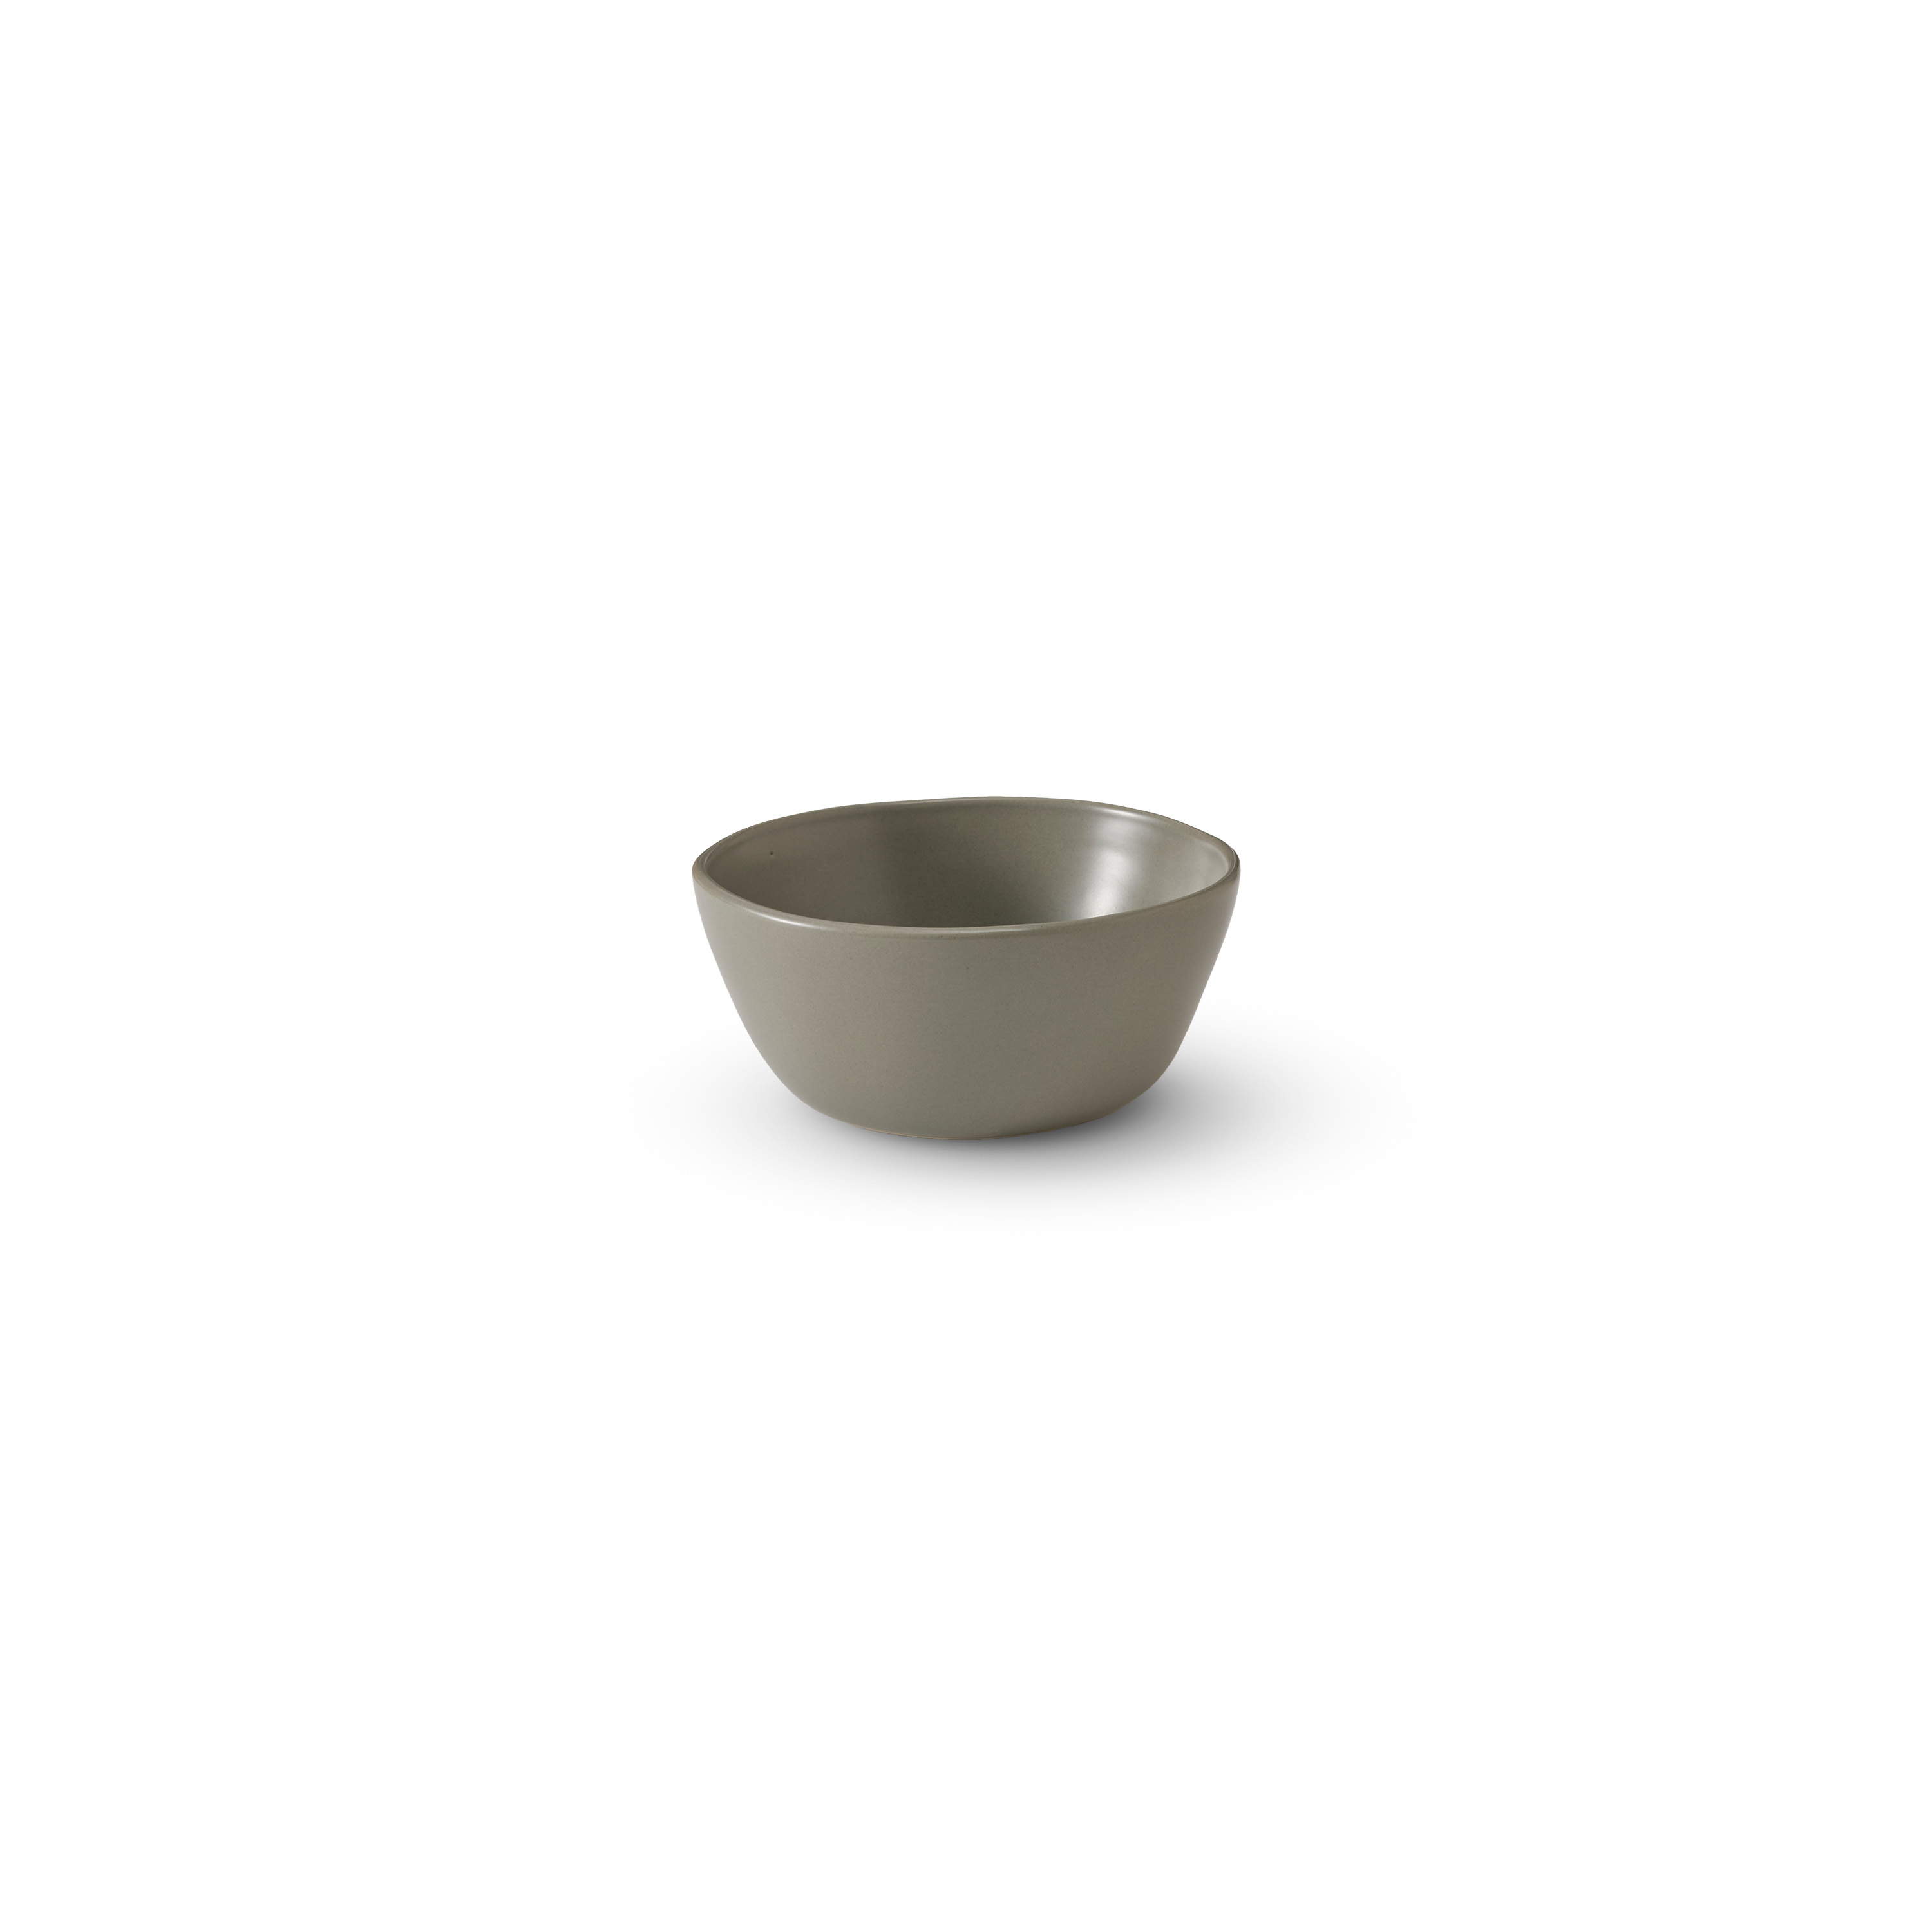 Tonkin Rice Bowl: Light grey